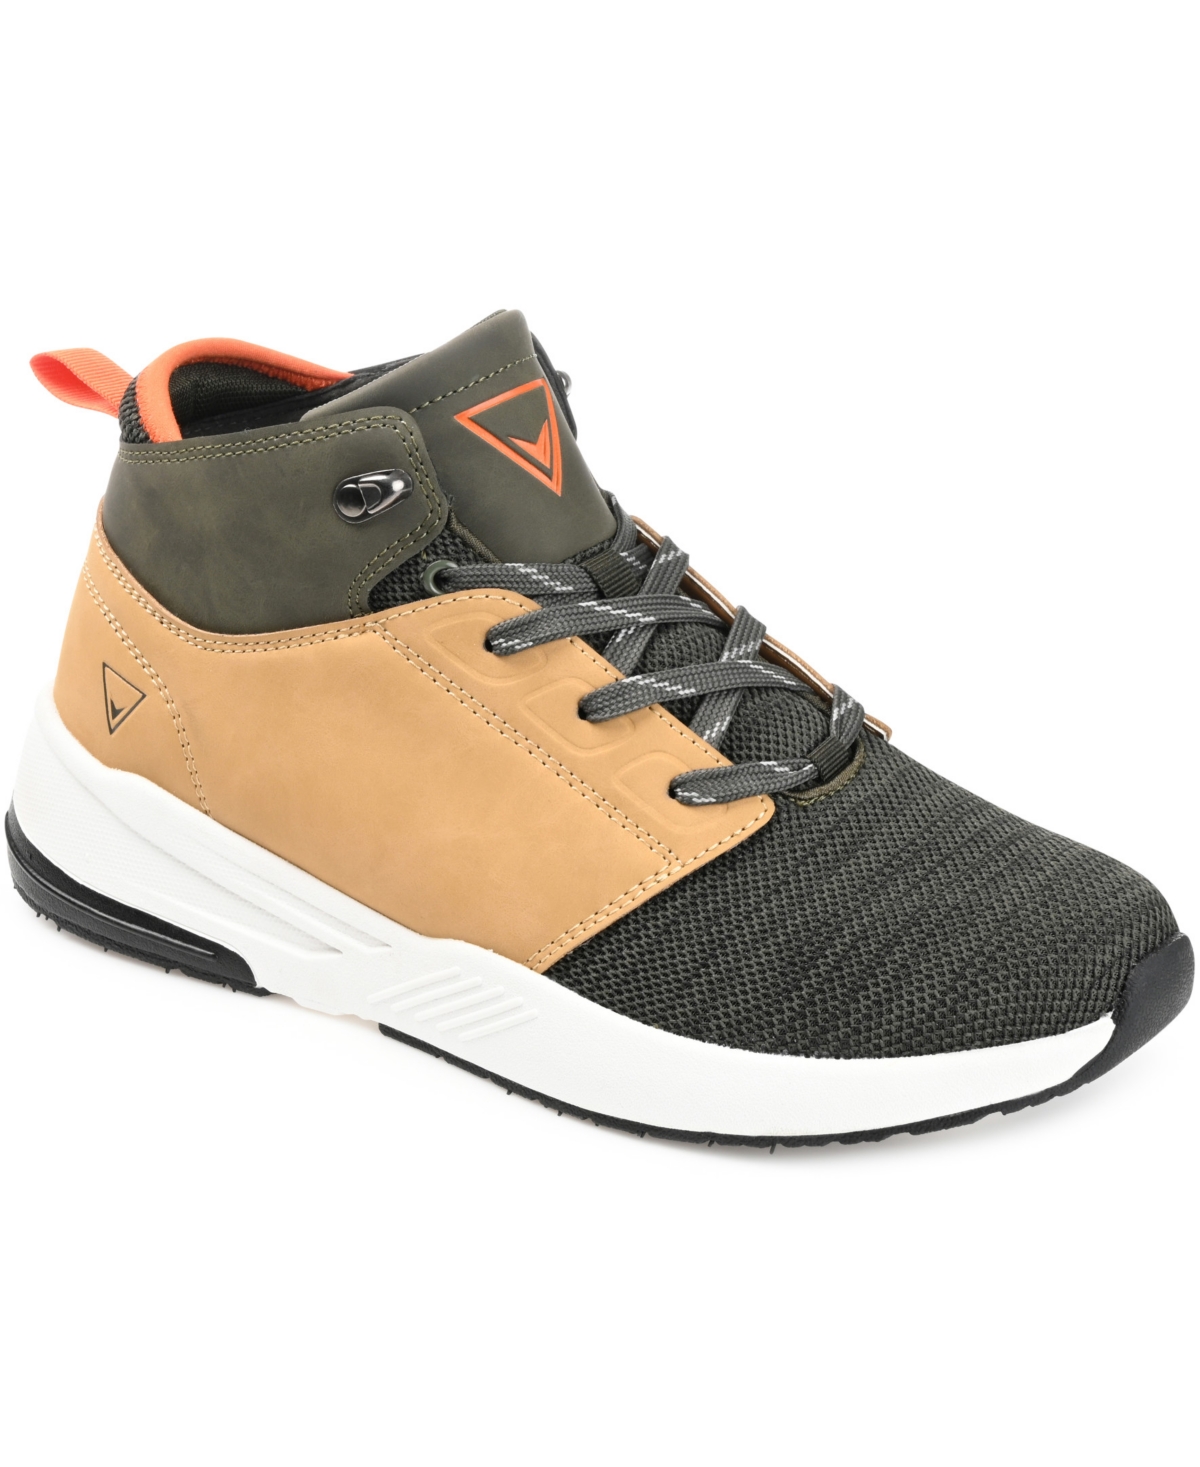 Men's Hopper Knit Sneaker Boots - Gray